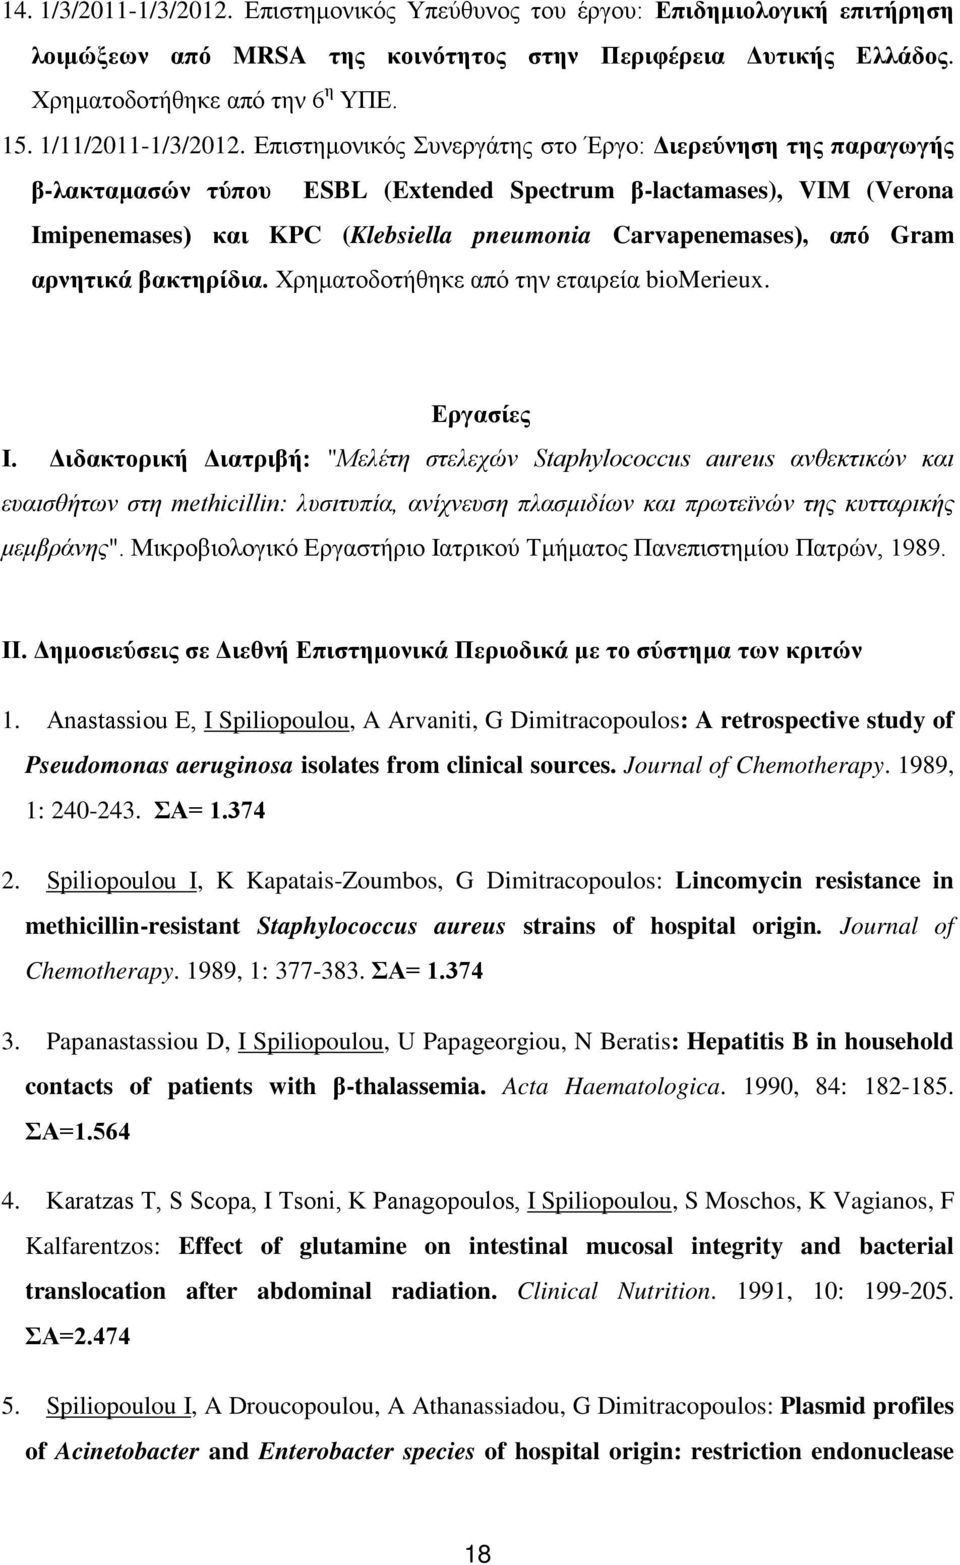 Επιστημονικός Συνεργάτης στο Έργο: Διερεύνηση της παραγωγής β-λακταμασών τύπου ΕSBL (Extended Spectrum β-lactamases), VIM (Verona Imipenemases) και KPC (Klebsiella pneumonia Carvapenemases), από Gram